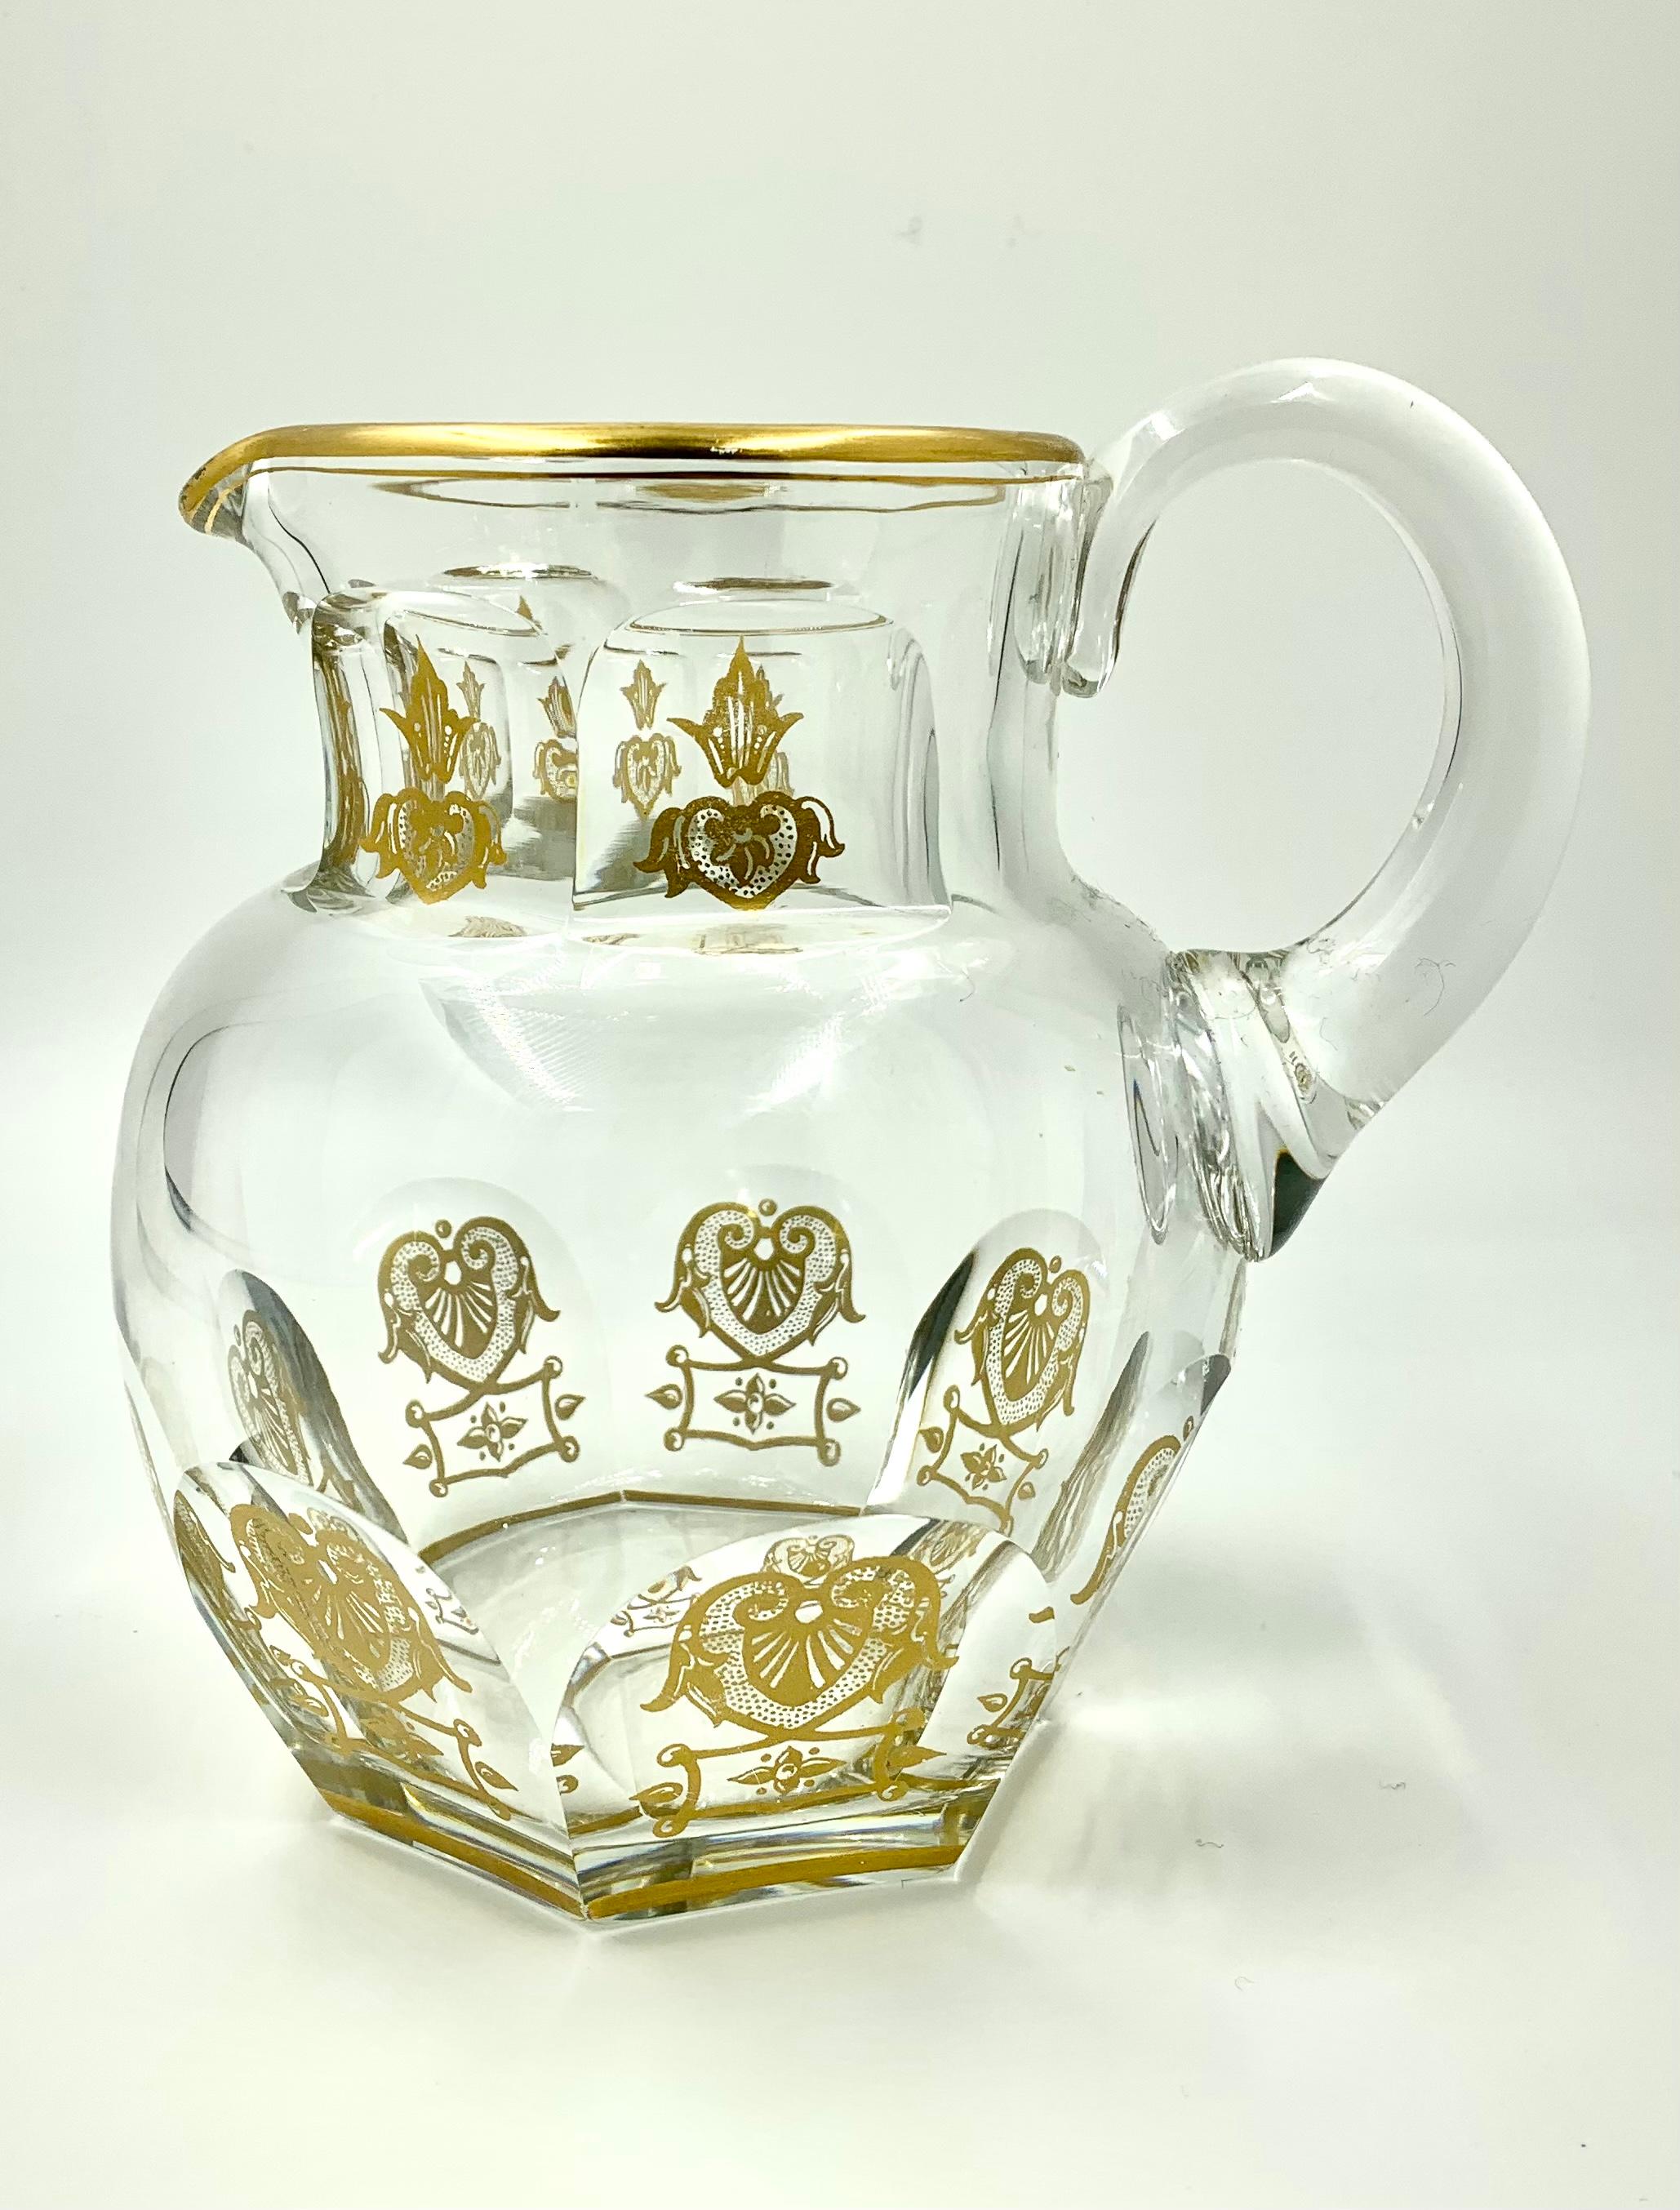 Belle carafe à cocktail/eau Baccarat Empire Harcourt.
Le motif Empire Harcourt est l'un des plus recherchés de Baccarat. Classique depuis 1841, il a orné les tables de personnalités du monde entier, dont des rois, des reines, des papes, des